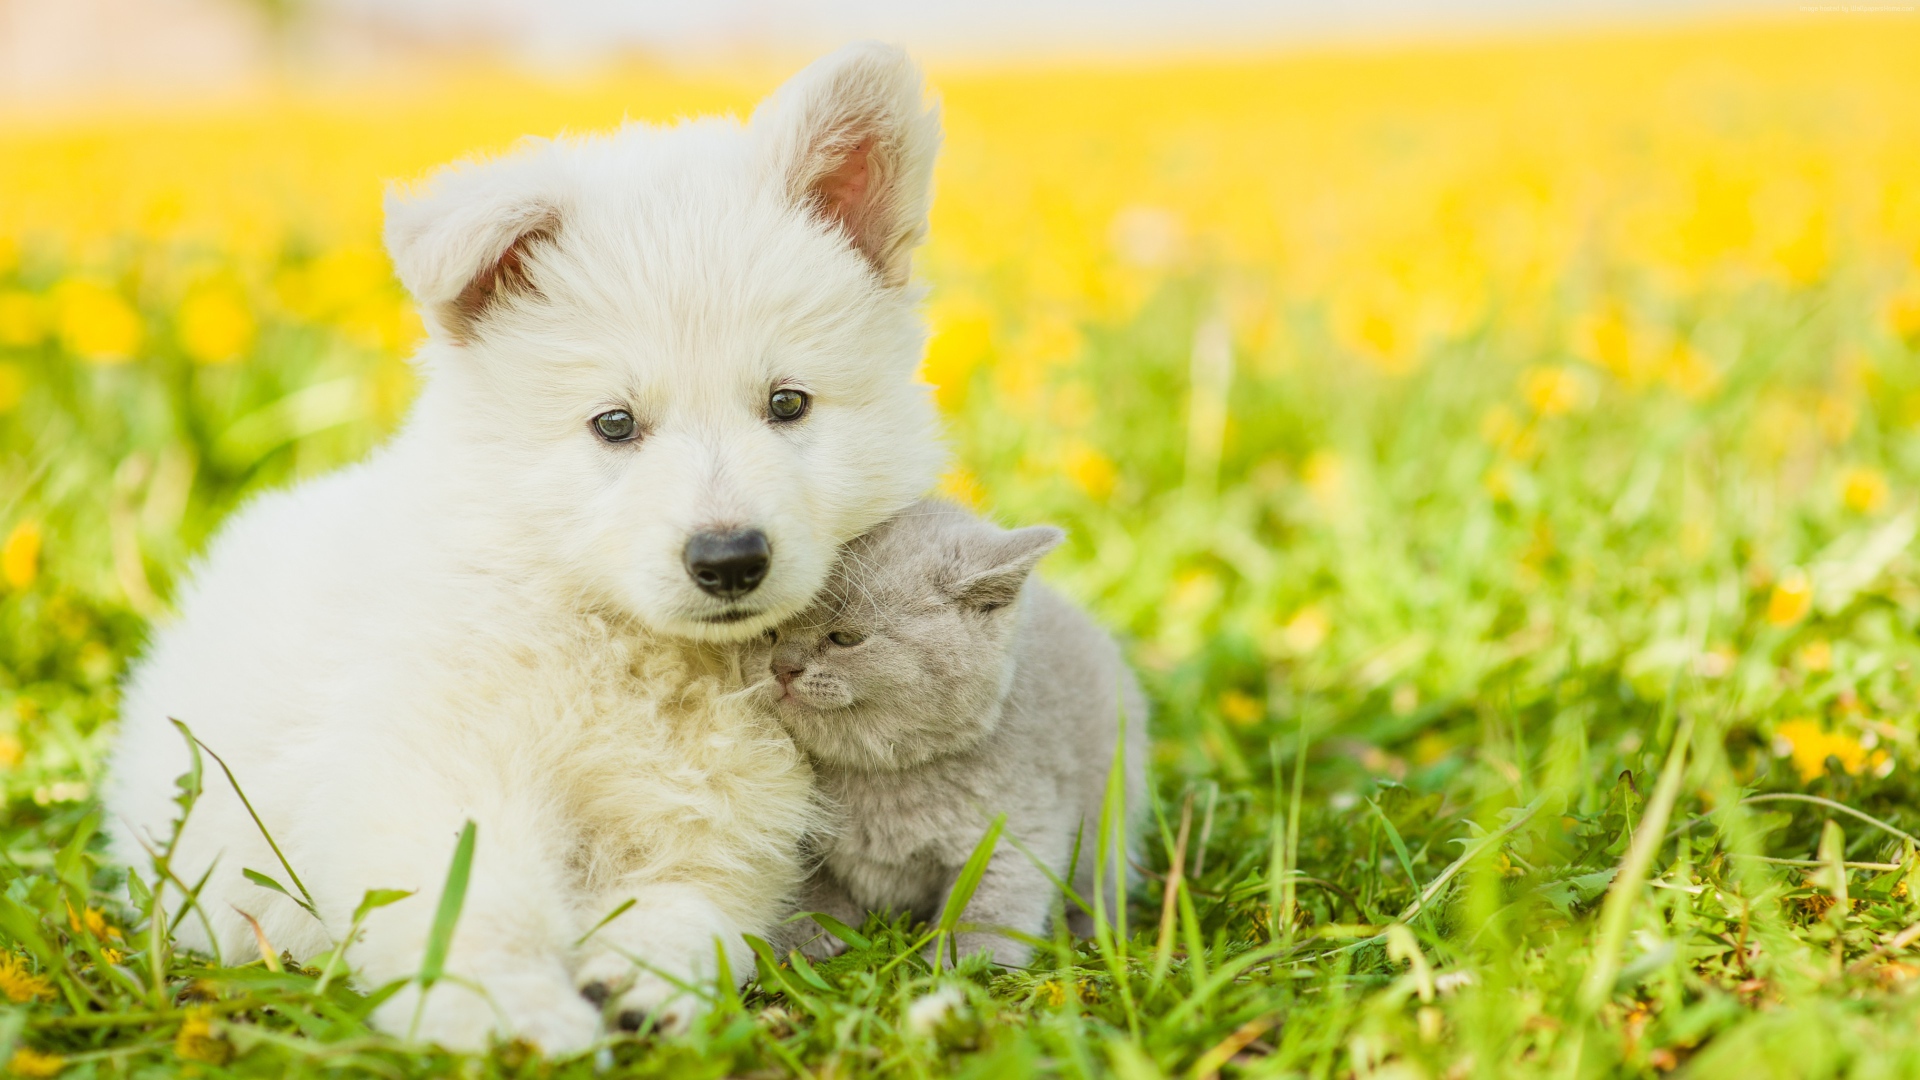 Пушистый белый щенок с серым котенком сидят на траве